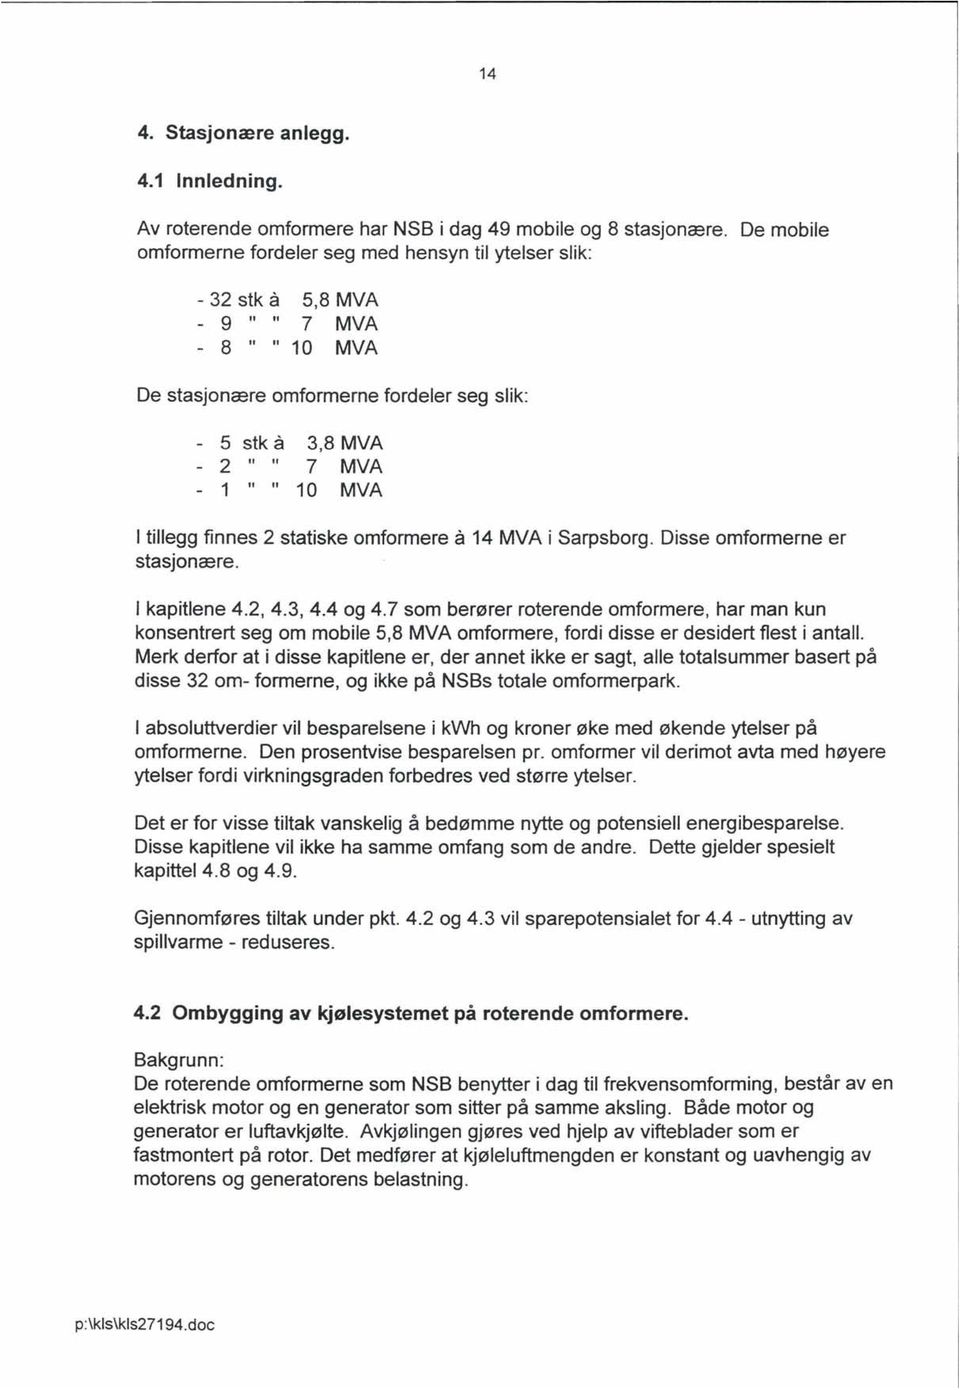 I tillegg finnes 2 statiske omformere å 14 MVA i Sarpsborg. Disse omformerne er stasjonære. I kapitlene 4.2,4.3,4.4 og 4.